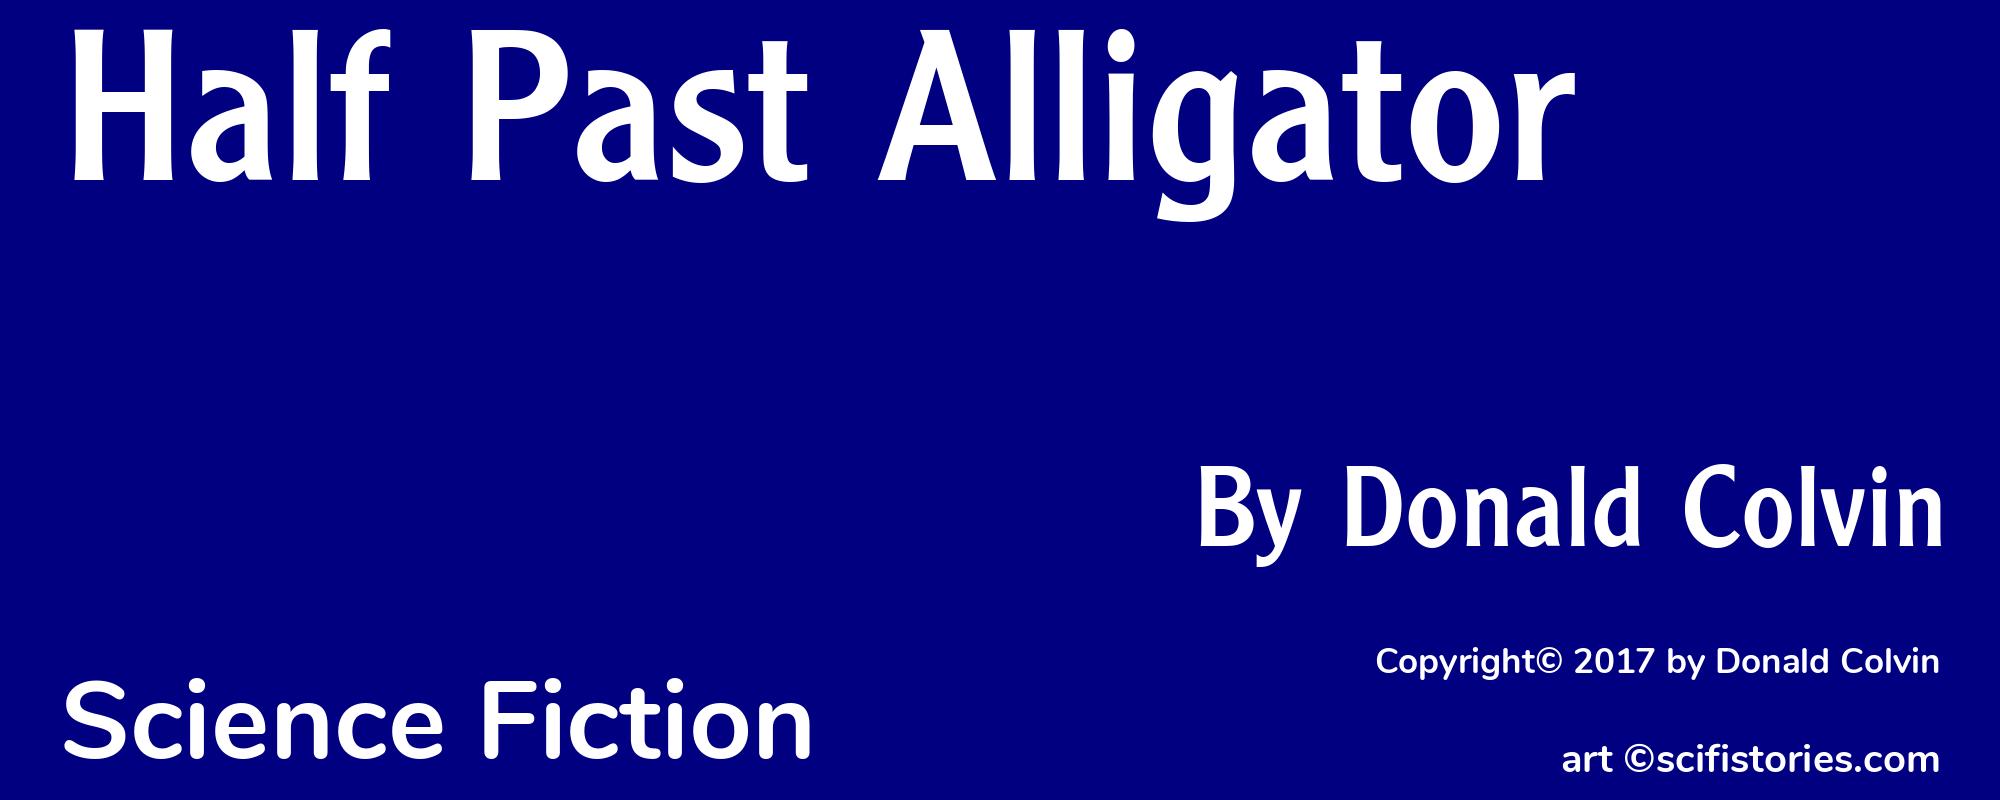 Half Past Alligator - Cover